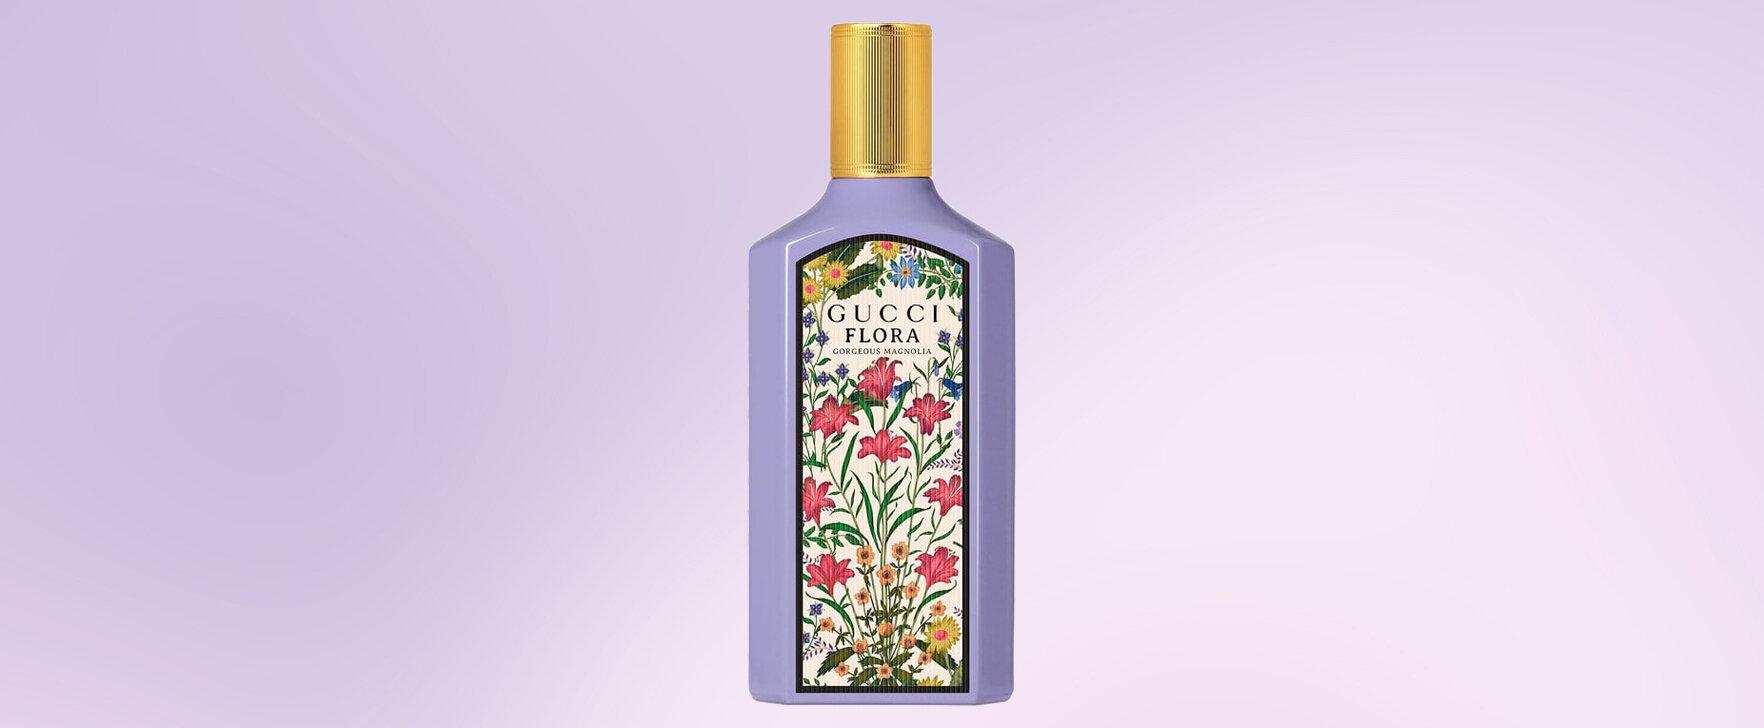 Floral Fragrance Journey: Gucci's New Eau de Parfum Flora Gorgeous Magnolia